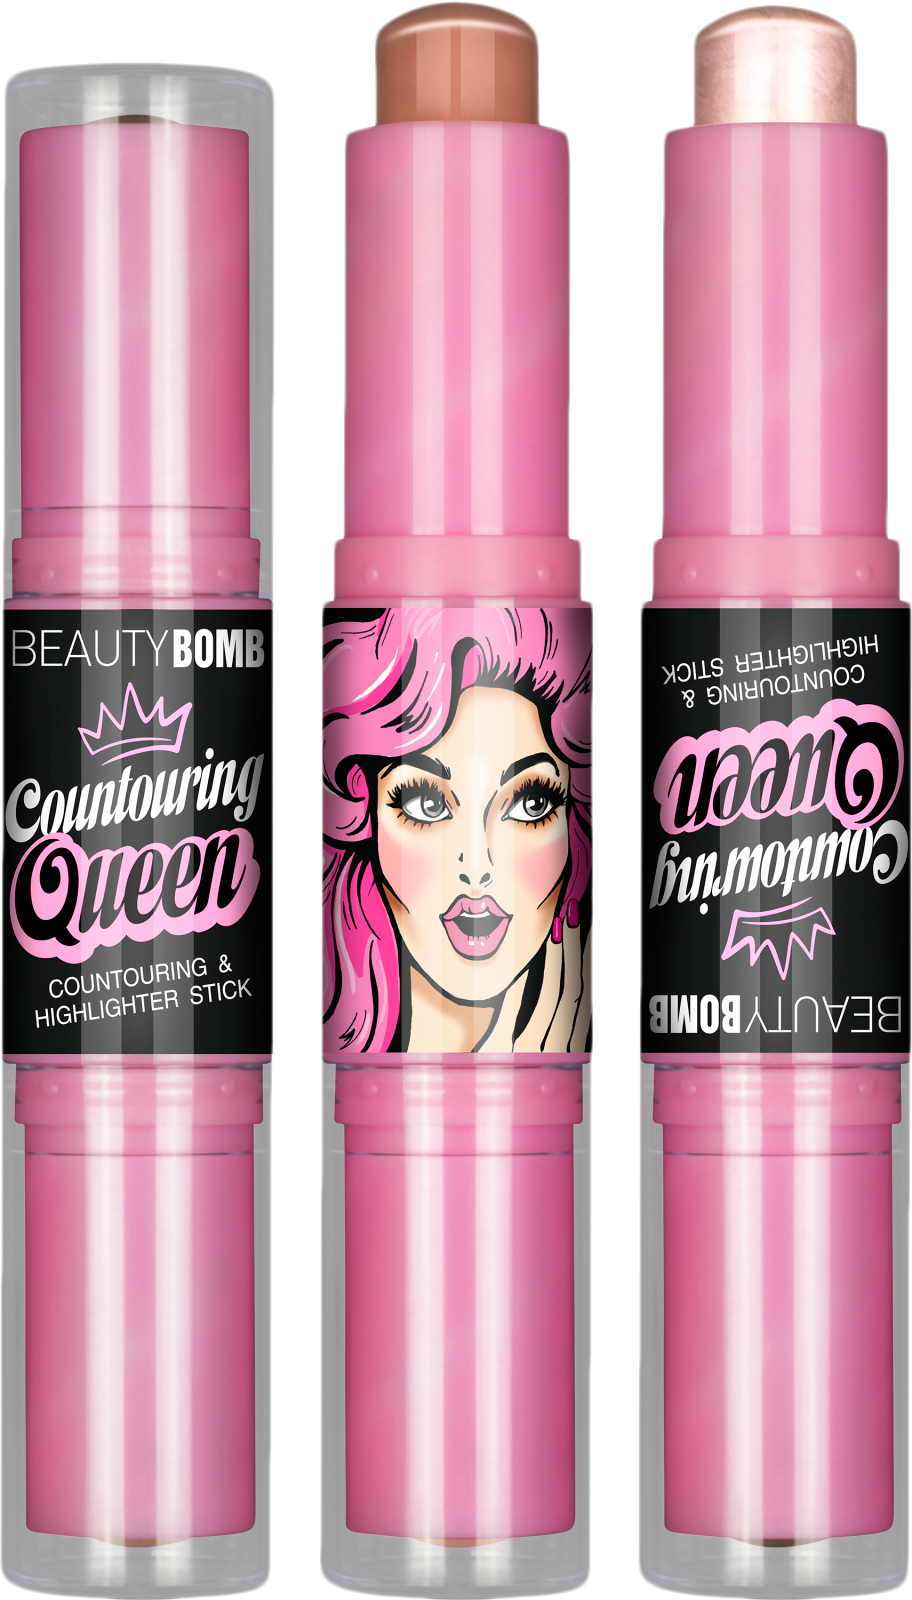 Корректор Beauty Bomb Countouring Queen тон 02